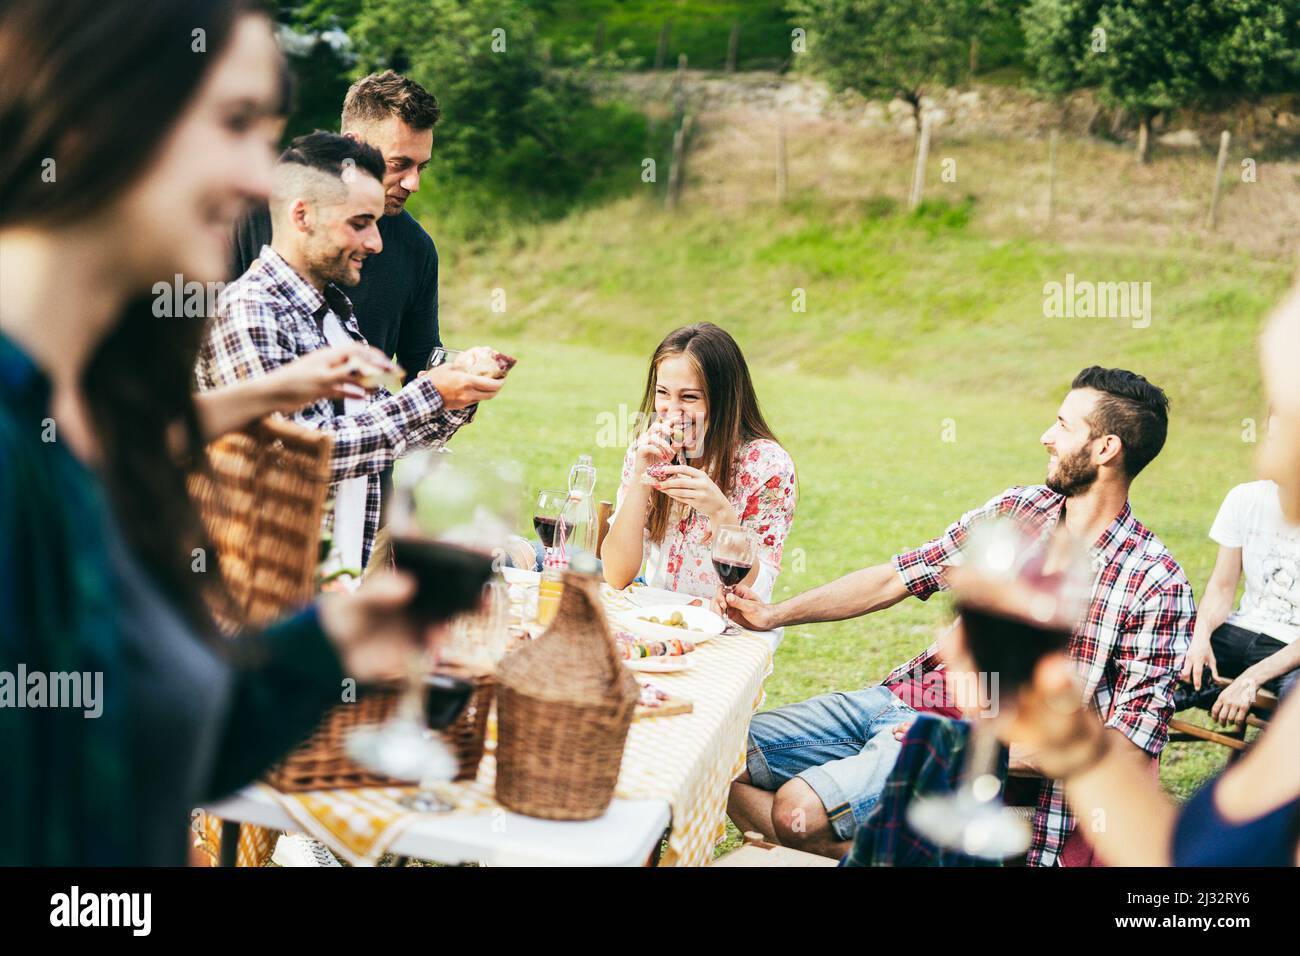 Glückliche junge Menschen mit Spaß dabei Grillparty im Weinberg im Freien - Fokus auf das richtige Mädchen Gesicht Stockfoto